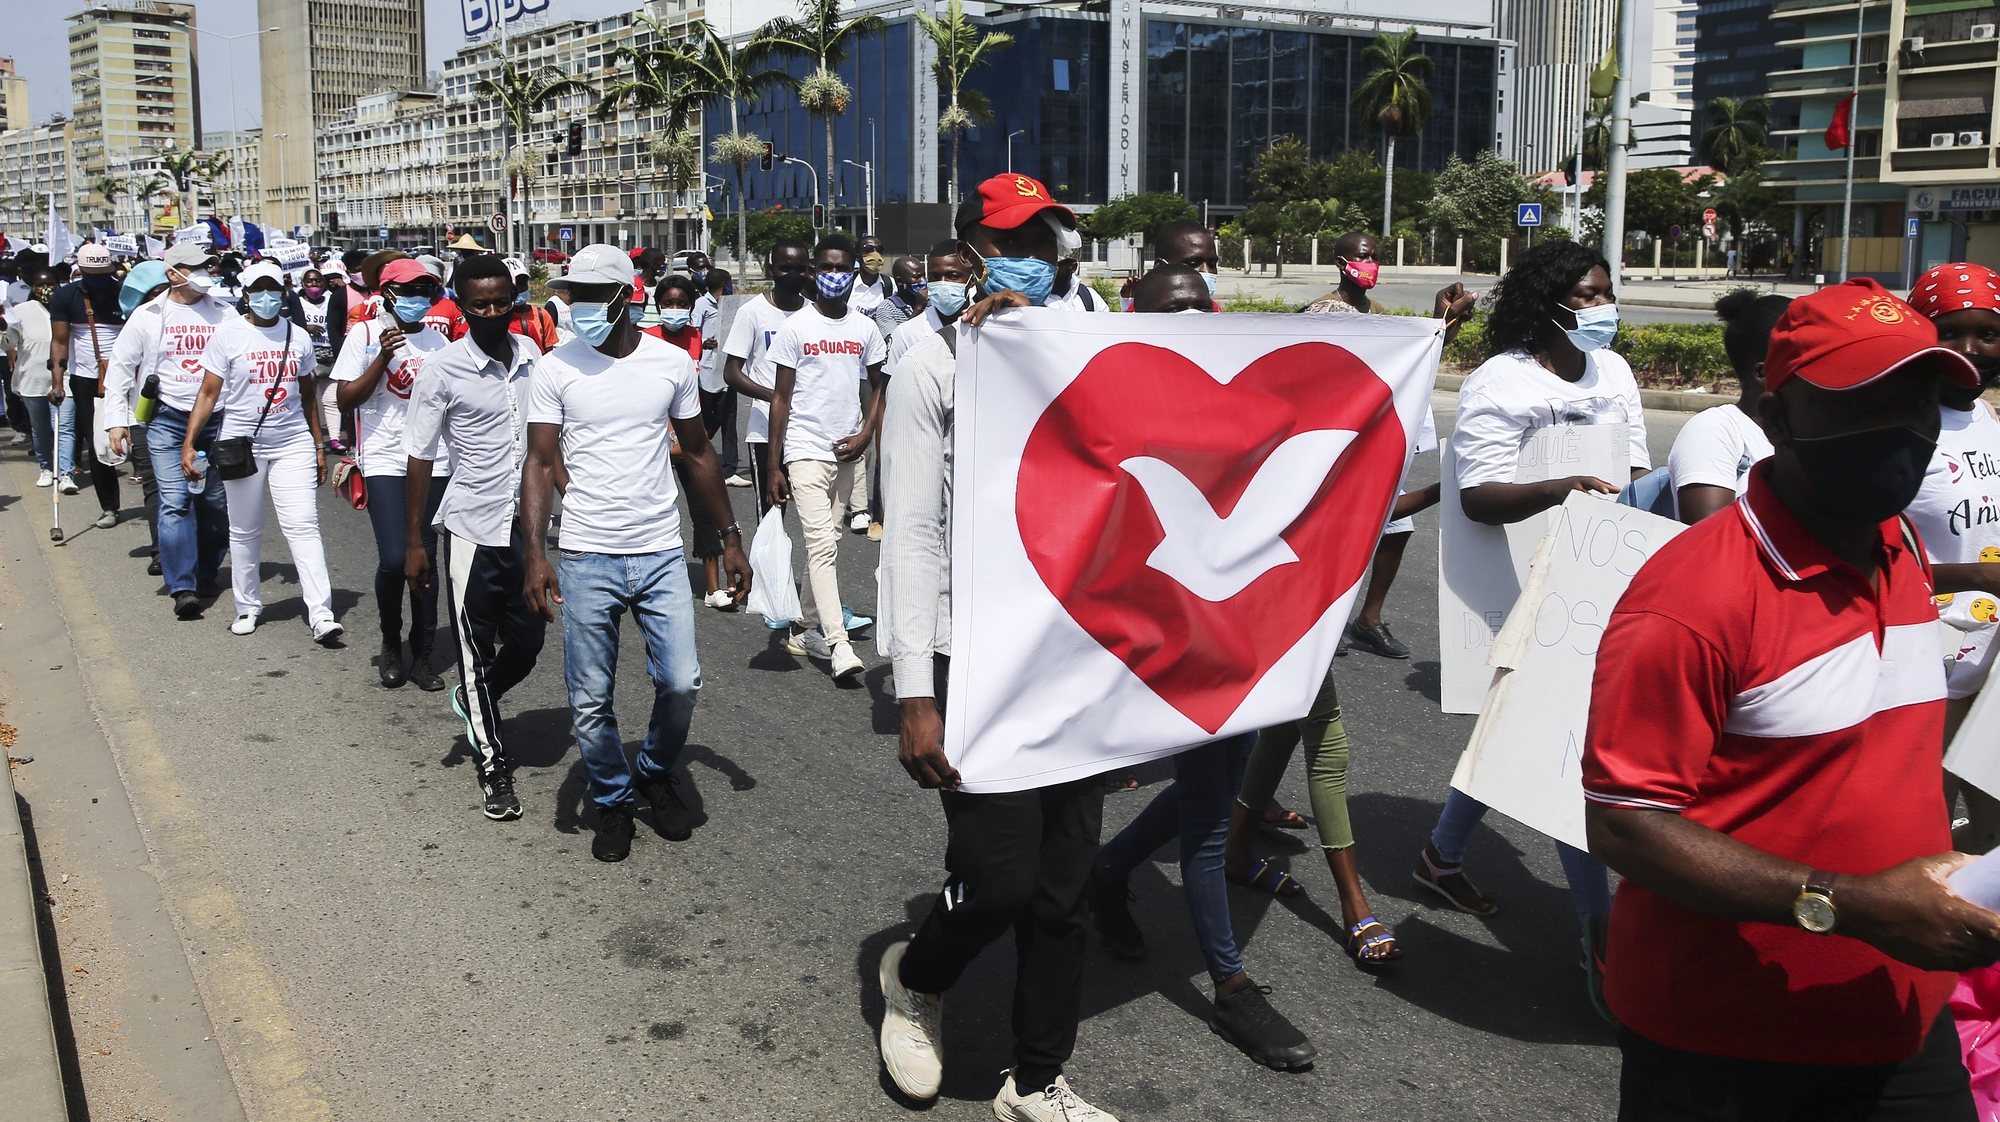 Membros da Igreja Universal do Reino de Deus (IURD) durante a marcha pacífica nas ruas de Luanda, Angola, 30 de janeiro de 2021. AMPE ROGÉRIO/LUSA